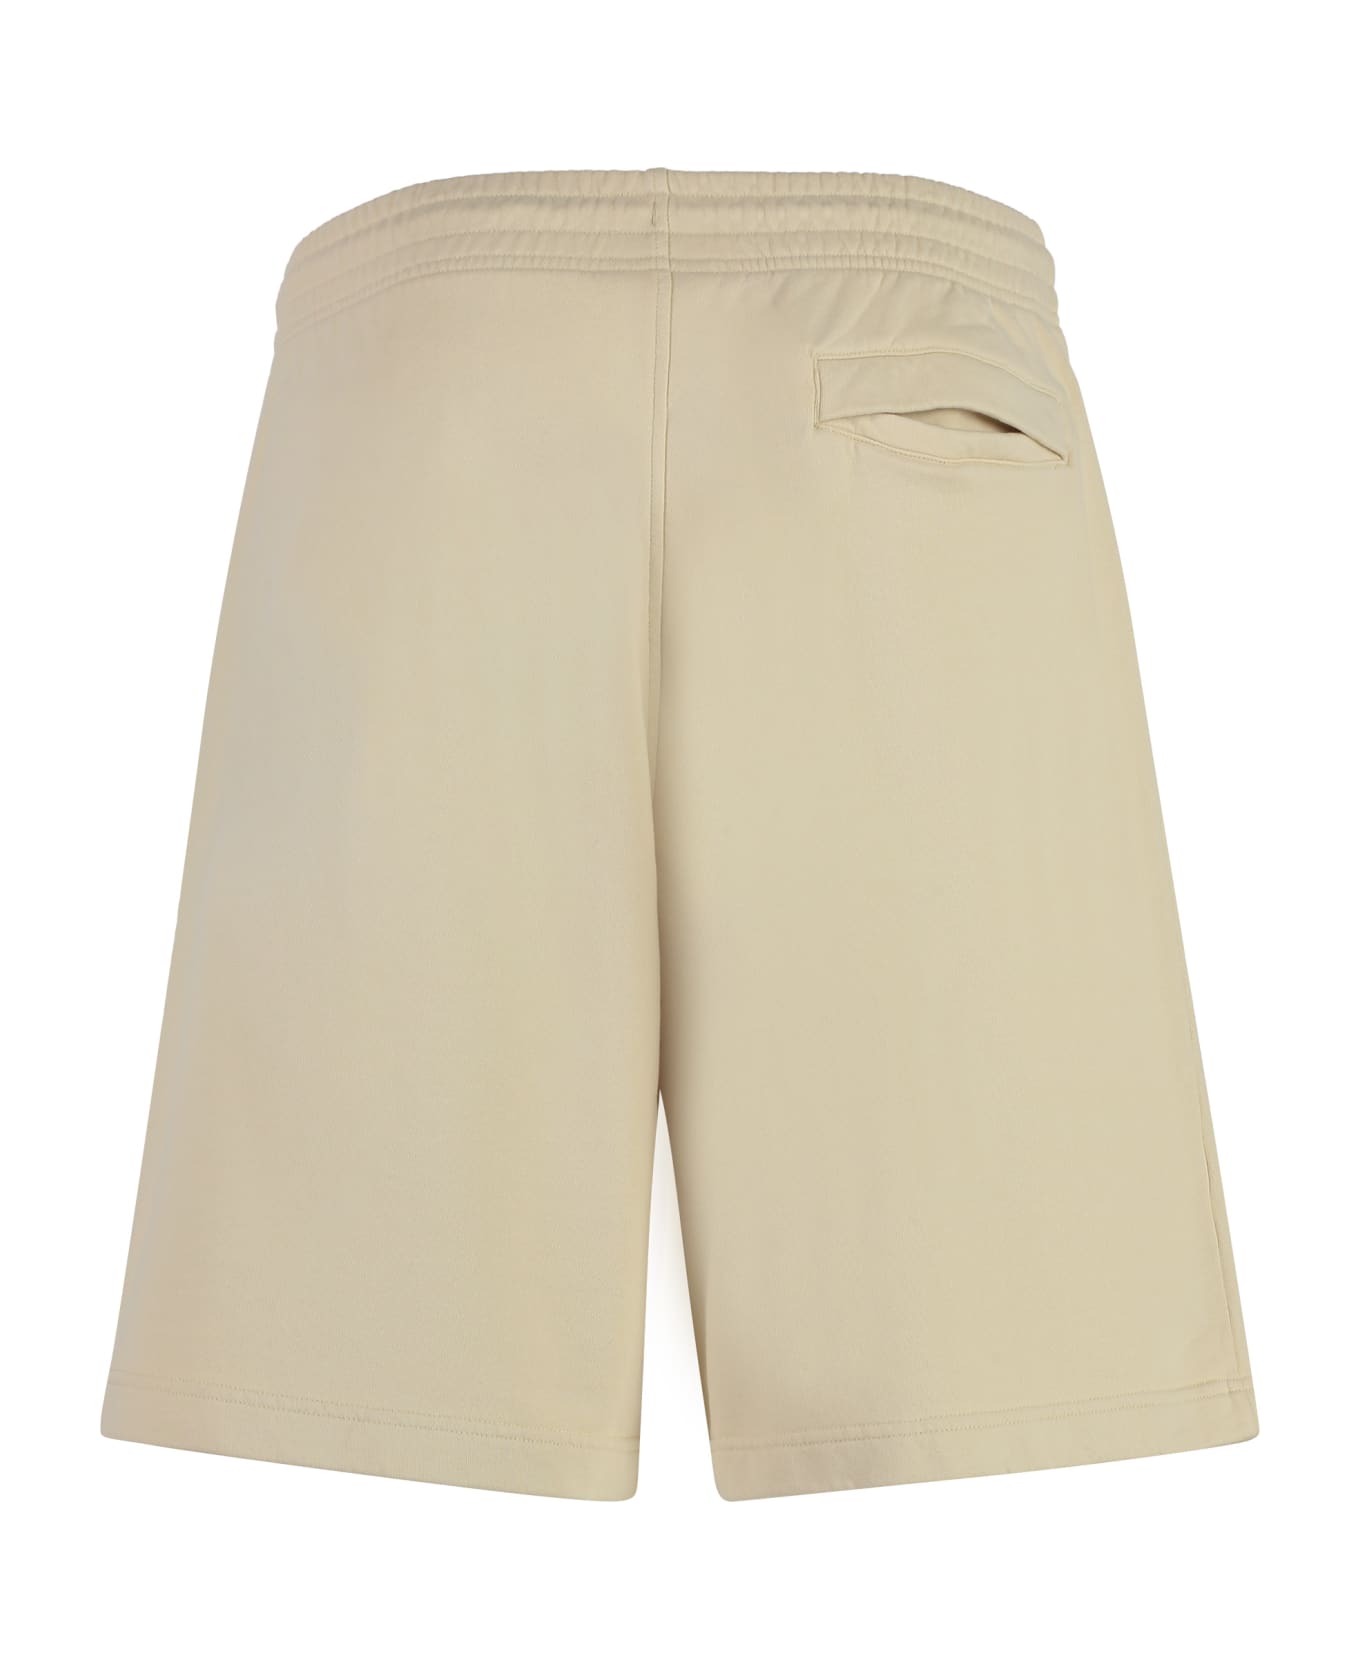 Maison Kitsuné Cotton Bermuda Shorts - Beige